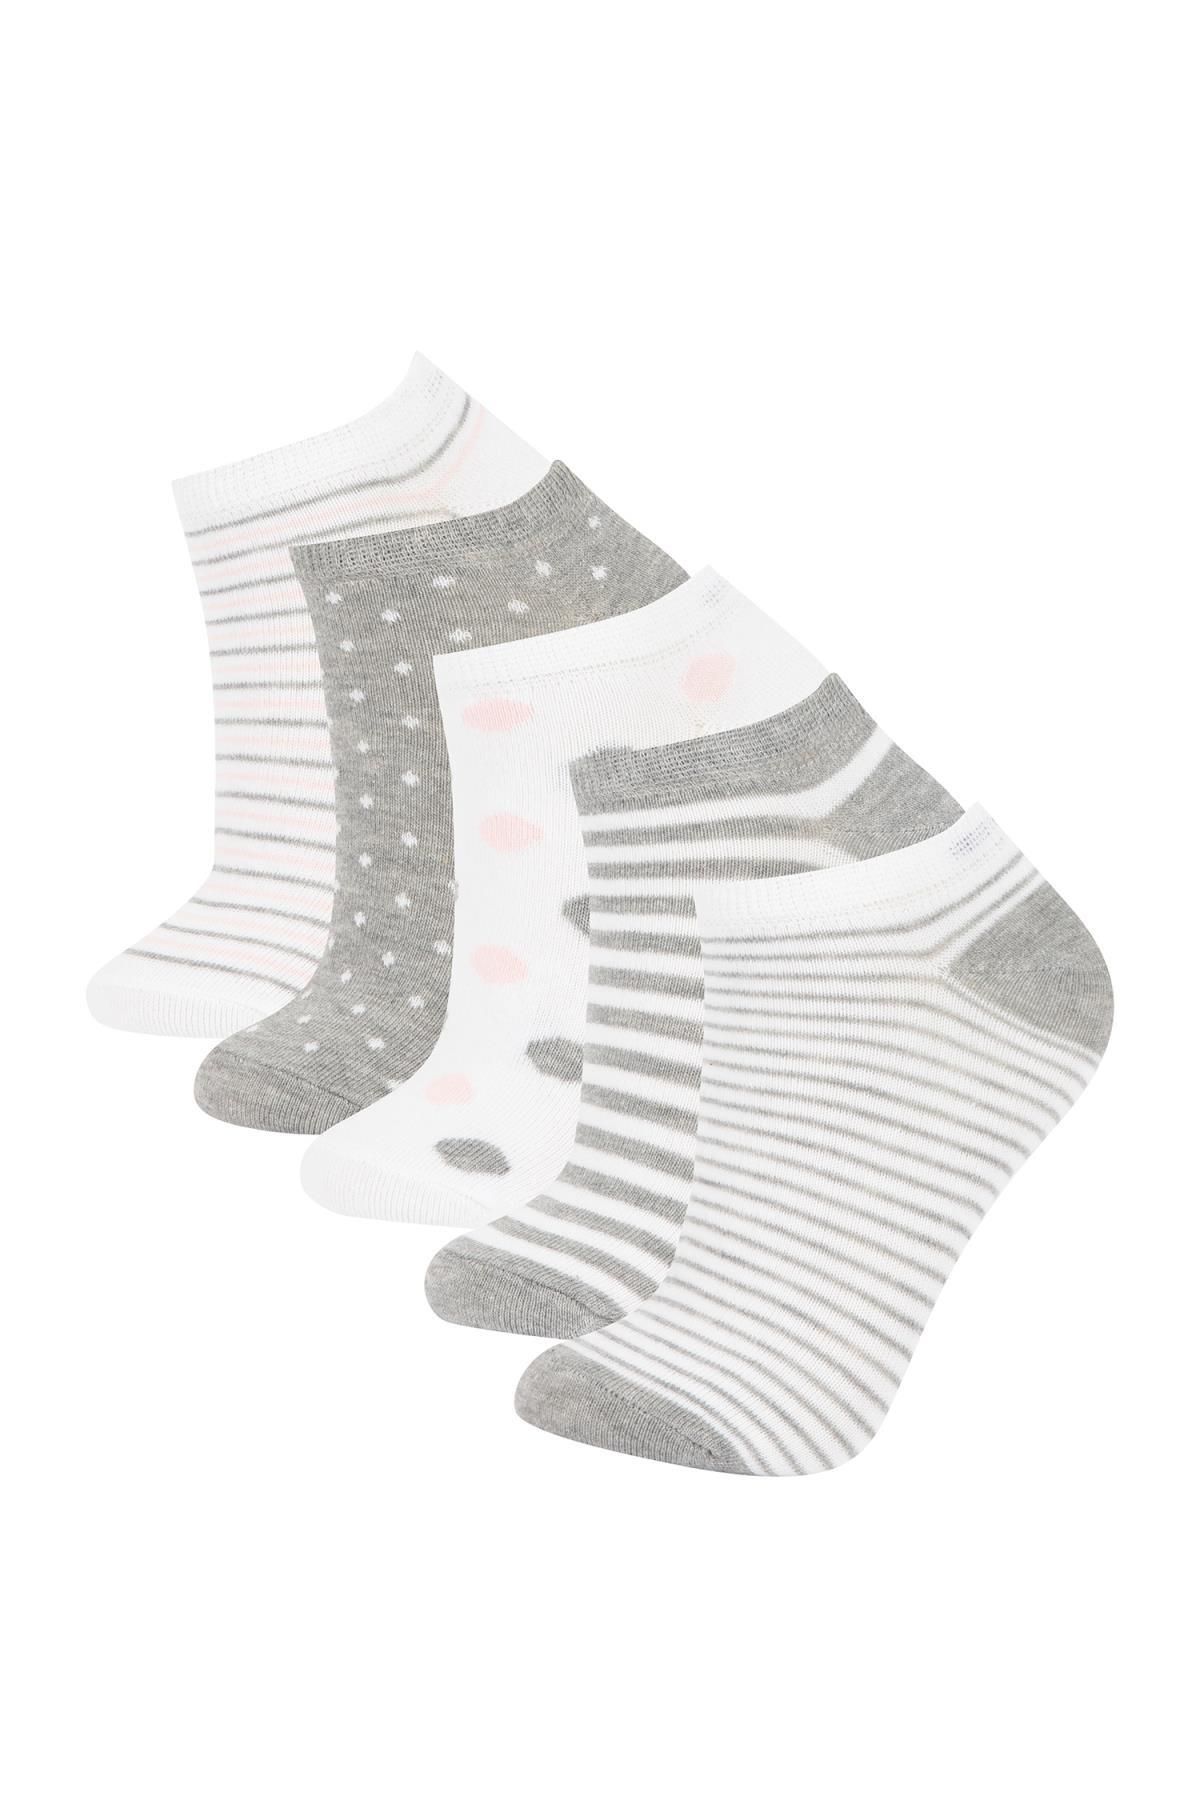 Defacto Kadın 5'li Pamuklu Patik Çorap V9712azns